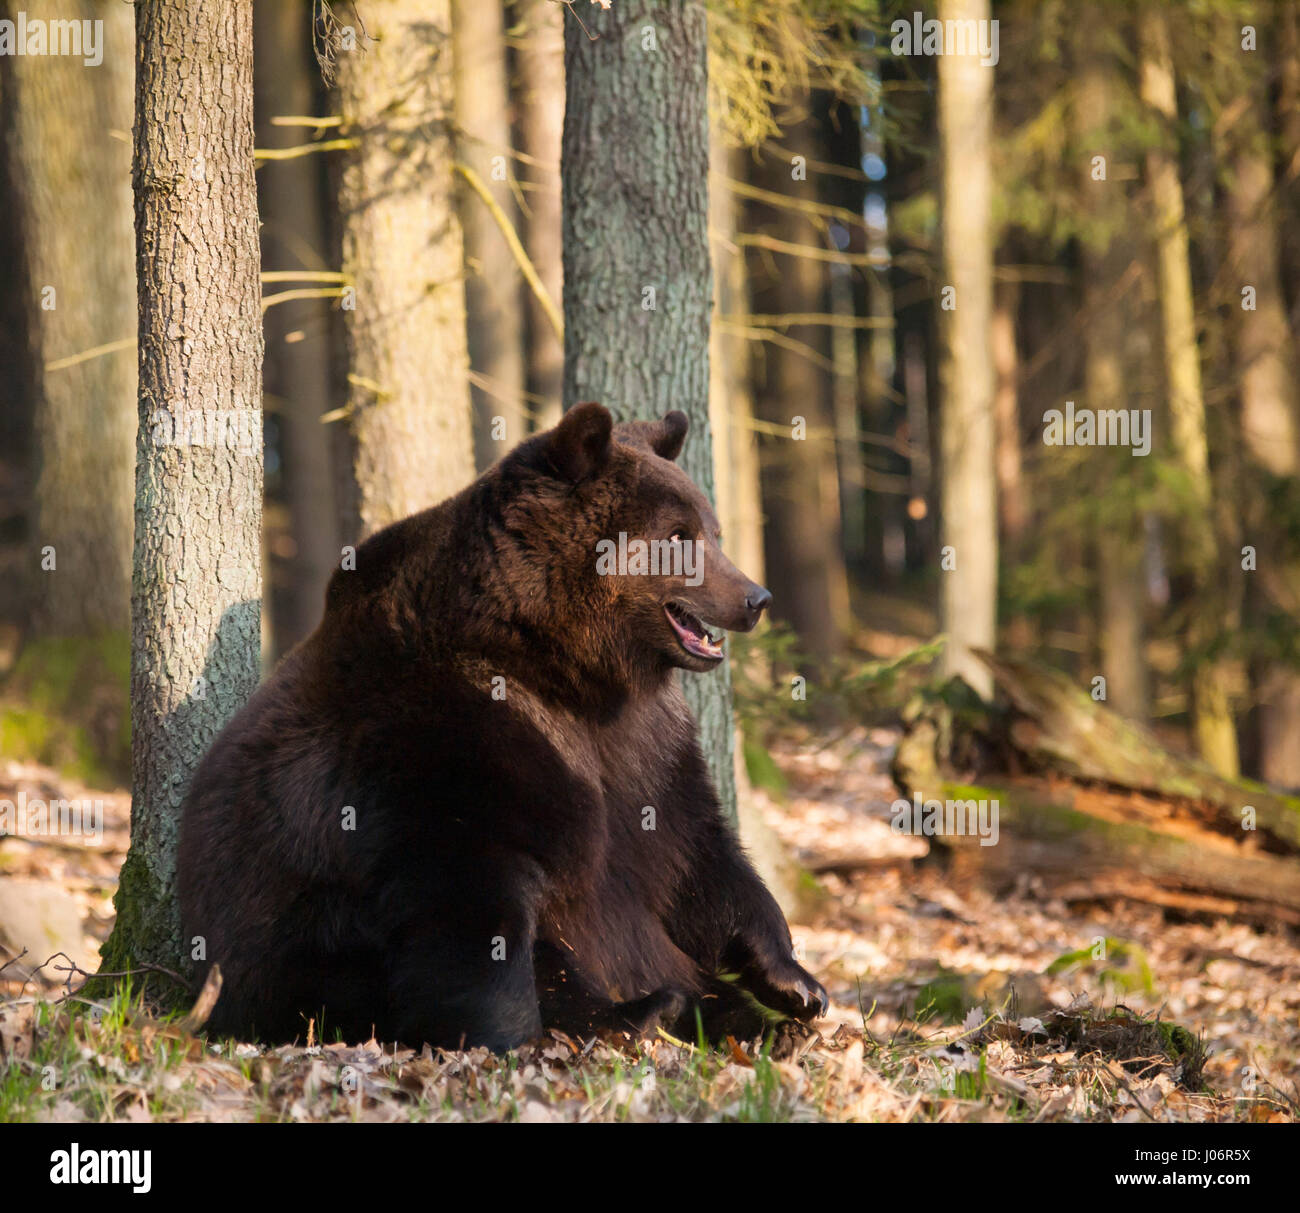 Ursus Arctos Arctos - eurasischen Braunbären in Wald Stockfoto